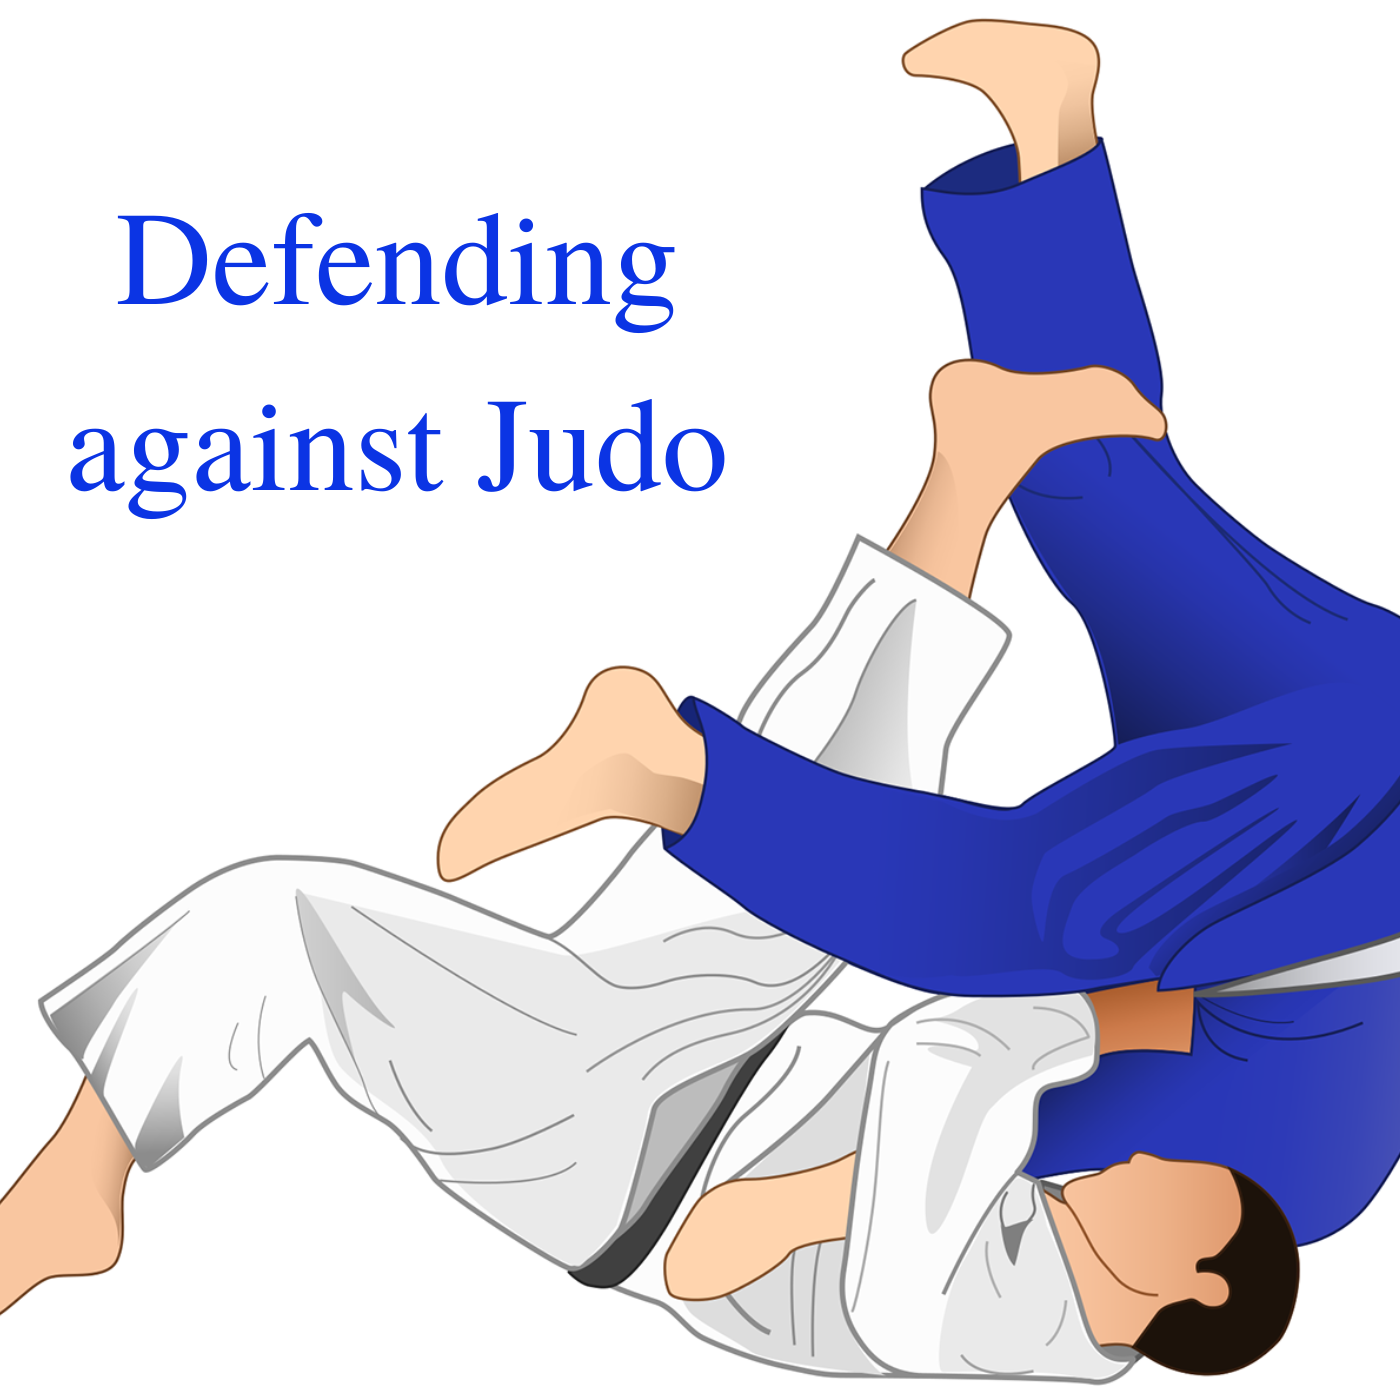 Defending against Judo